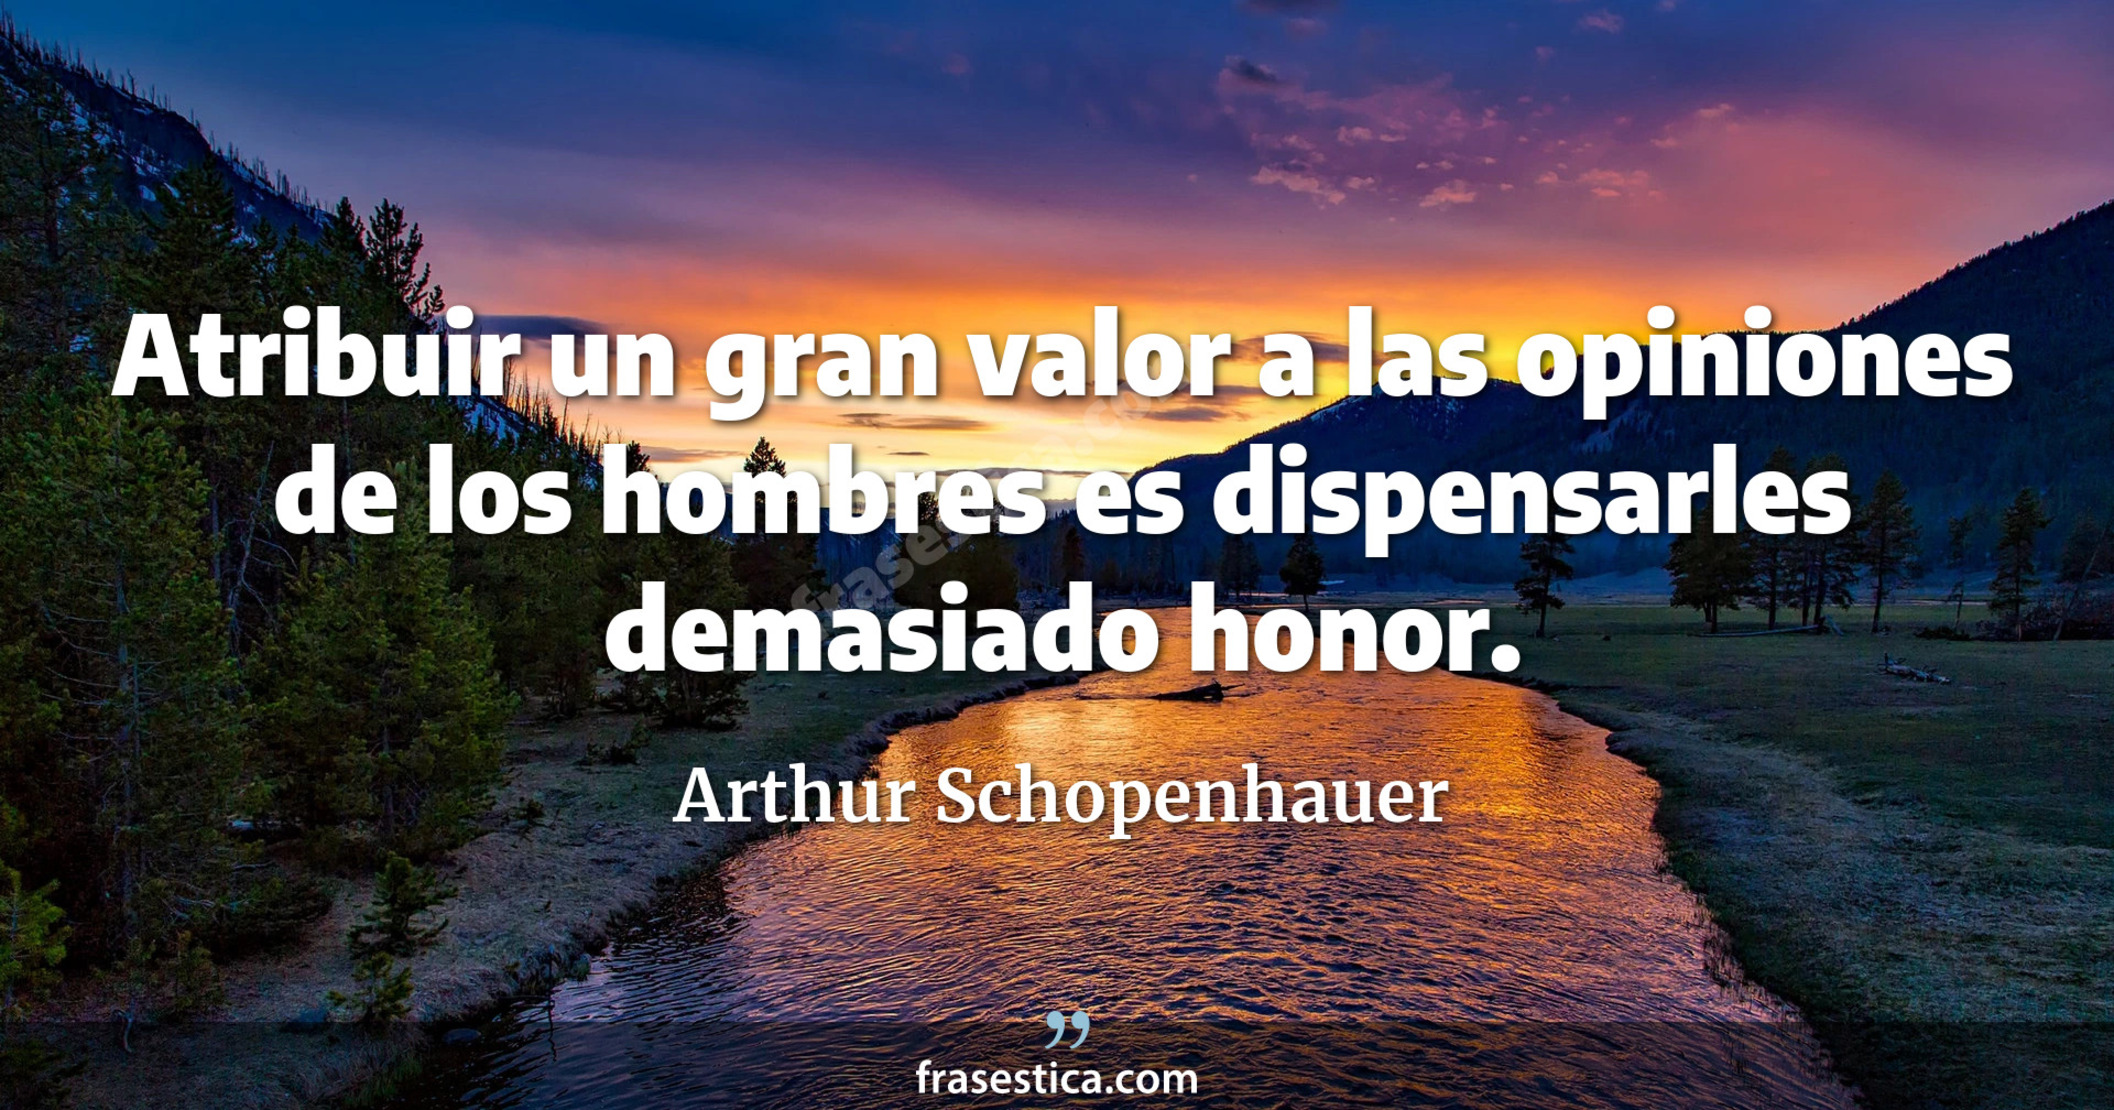 Atribuir un gran valor a las opiniones de los hombres es dispensarles demasiado honor. - Arthur Schopenhauer